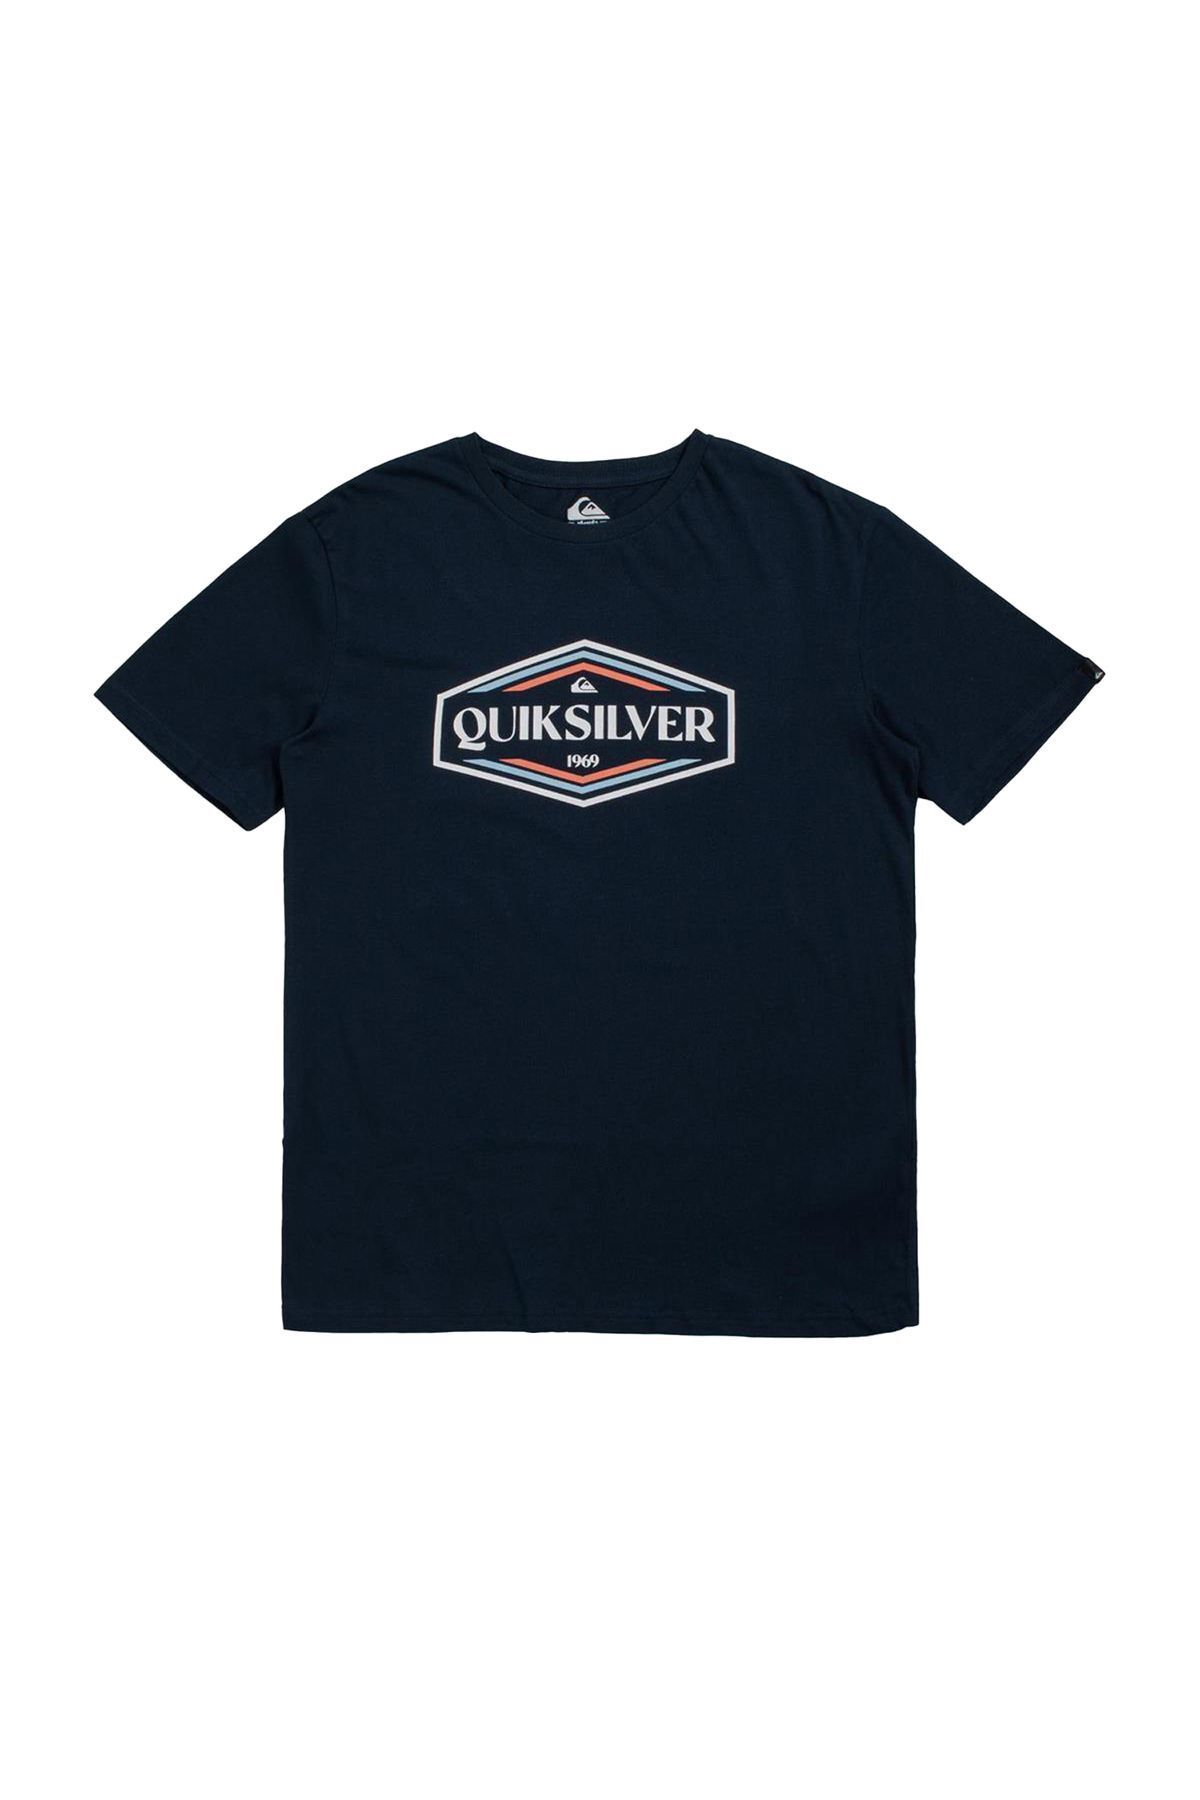 Quiksilver Shapes Up Erkek T-shirt